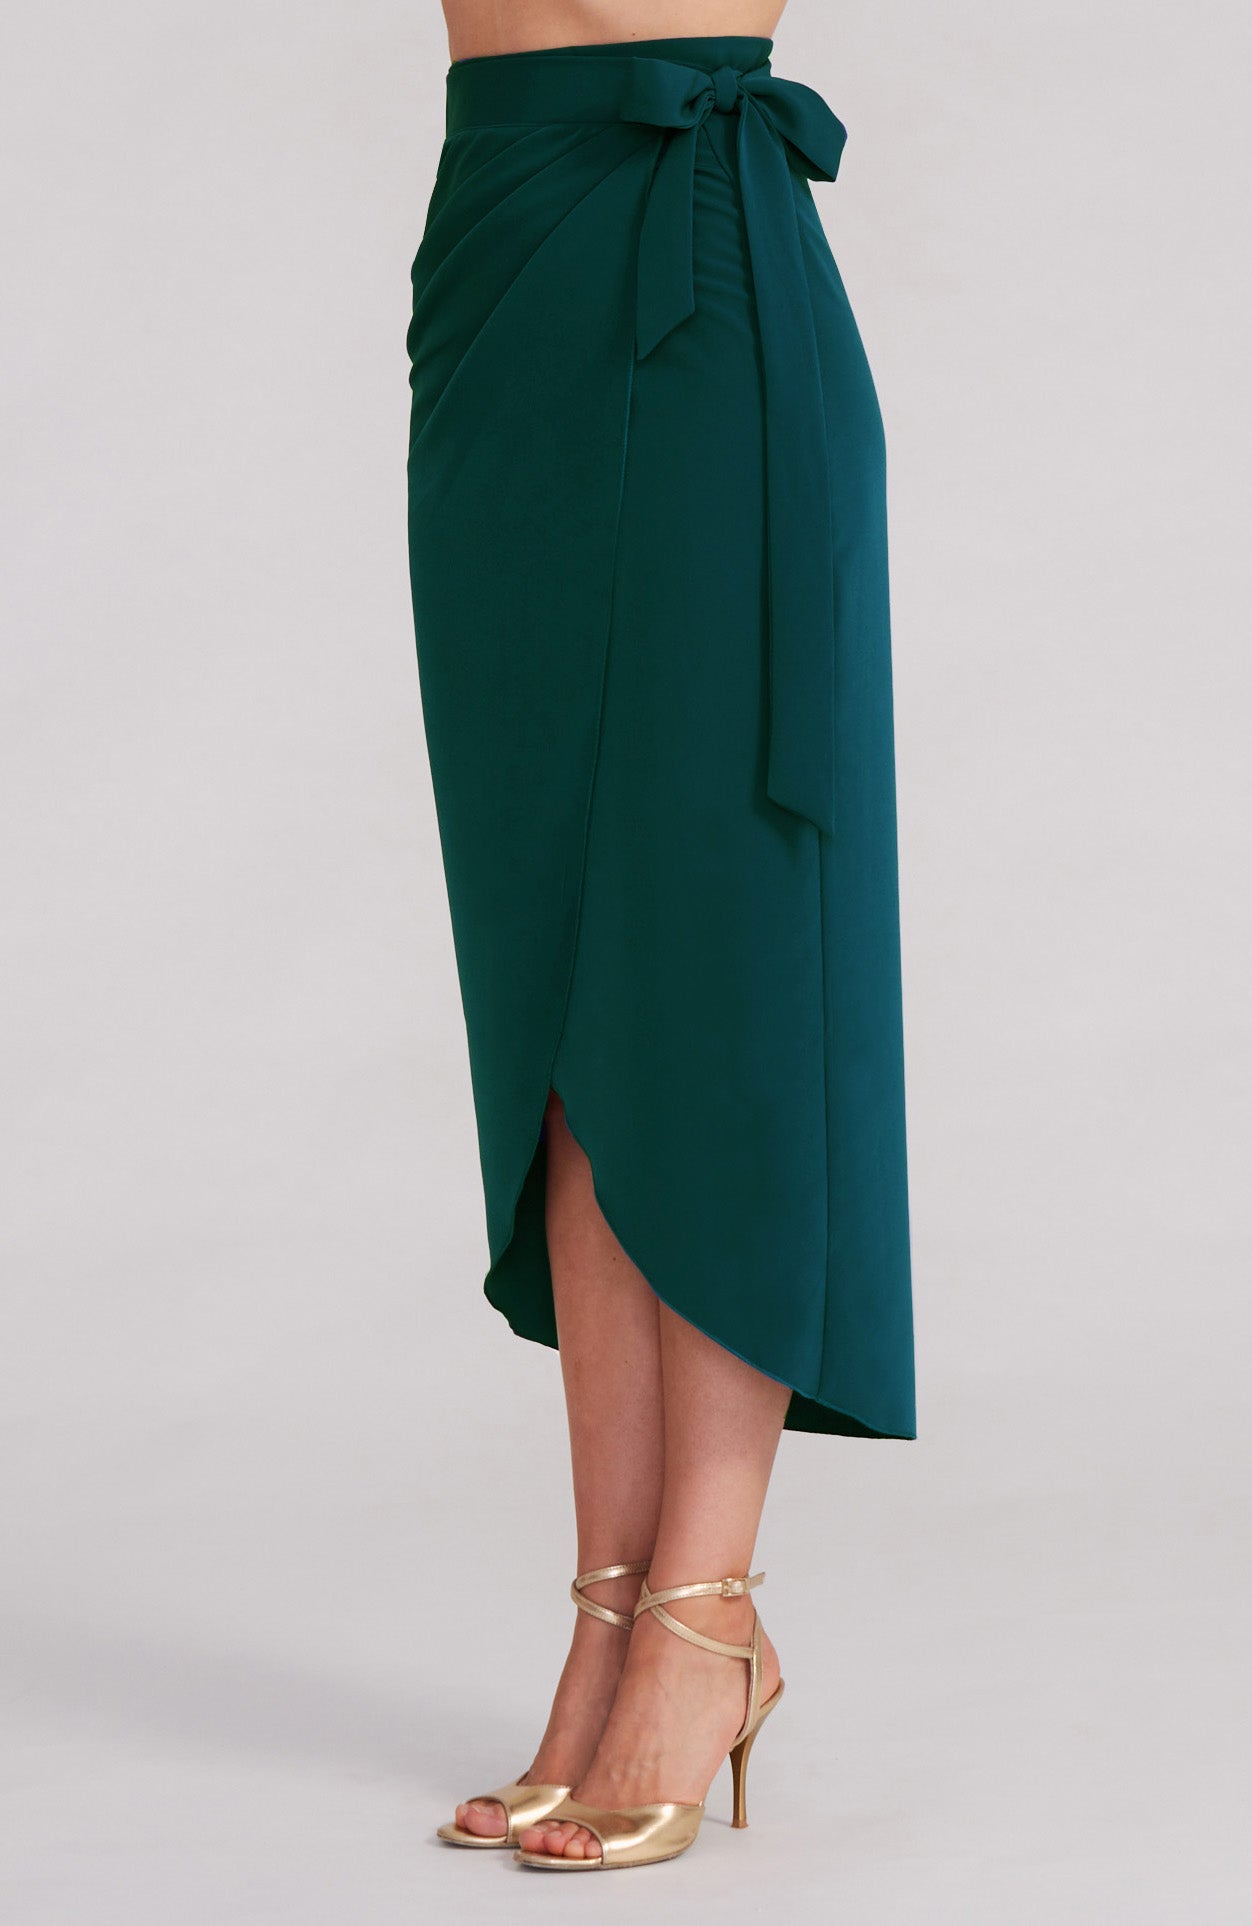 JULIET - Green Wrap Skirt